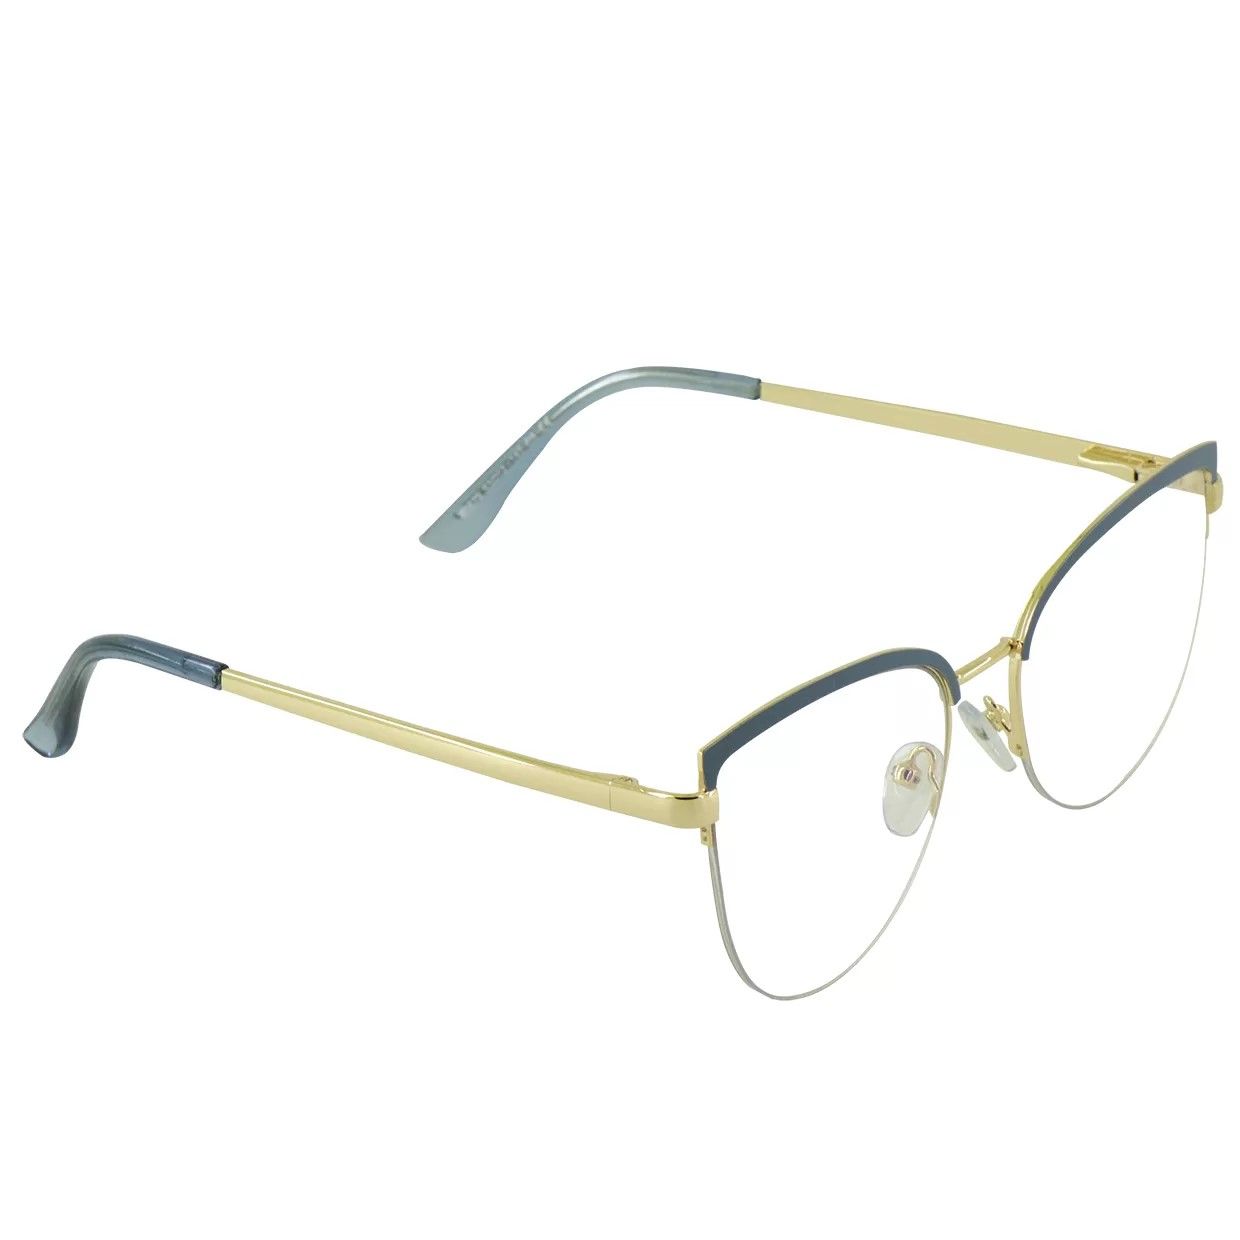 فریم عینک طبی گودلوک مدل 95679 -  - 2